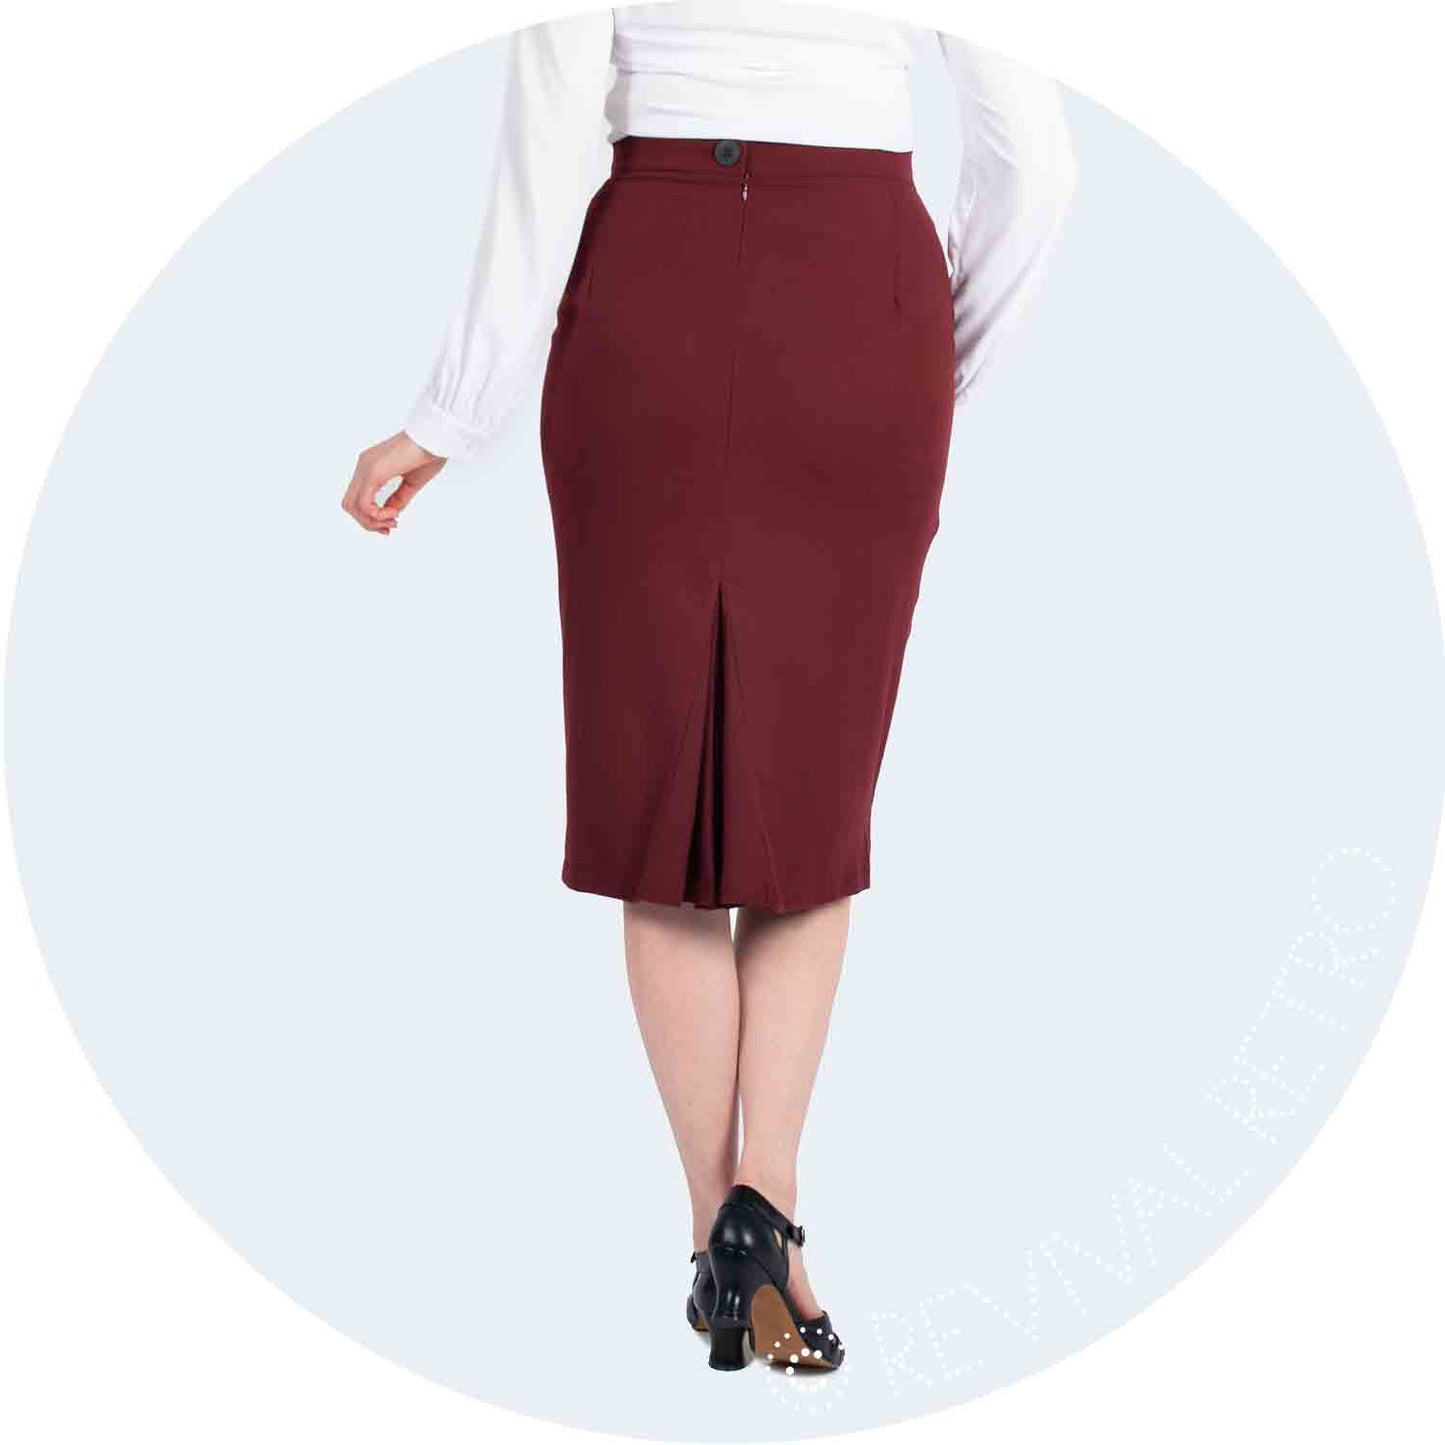 curvy pencil skirt in burgundy crepe